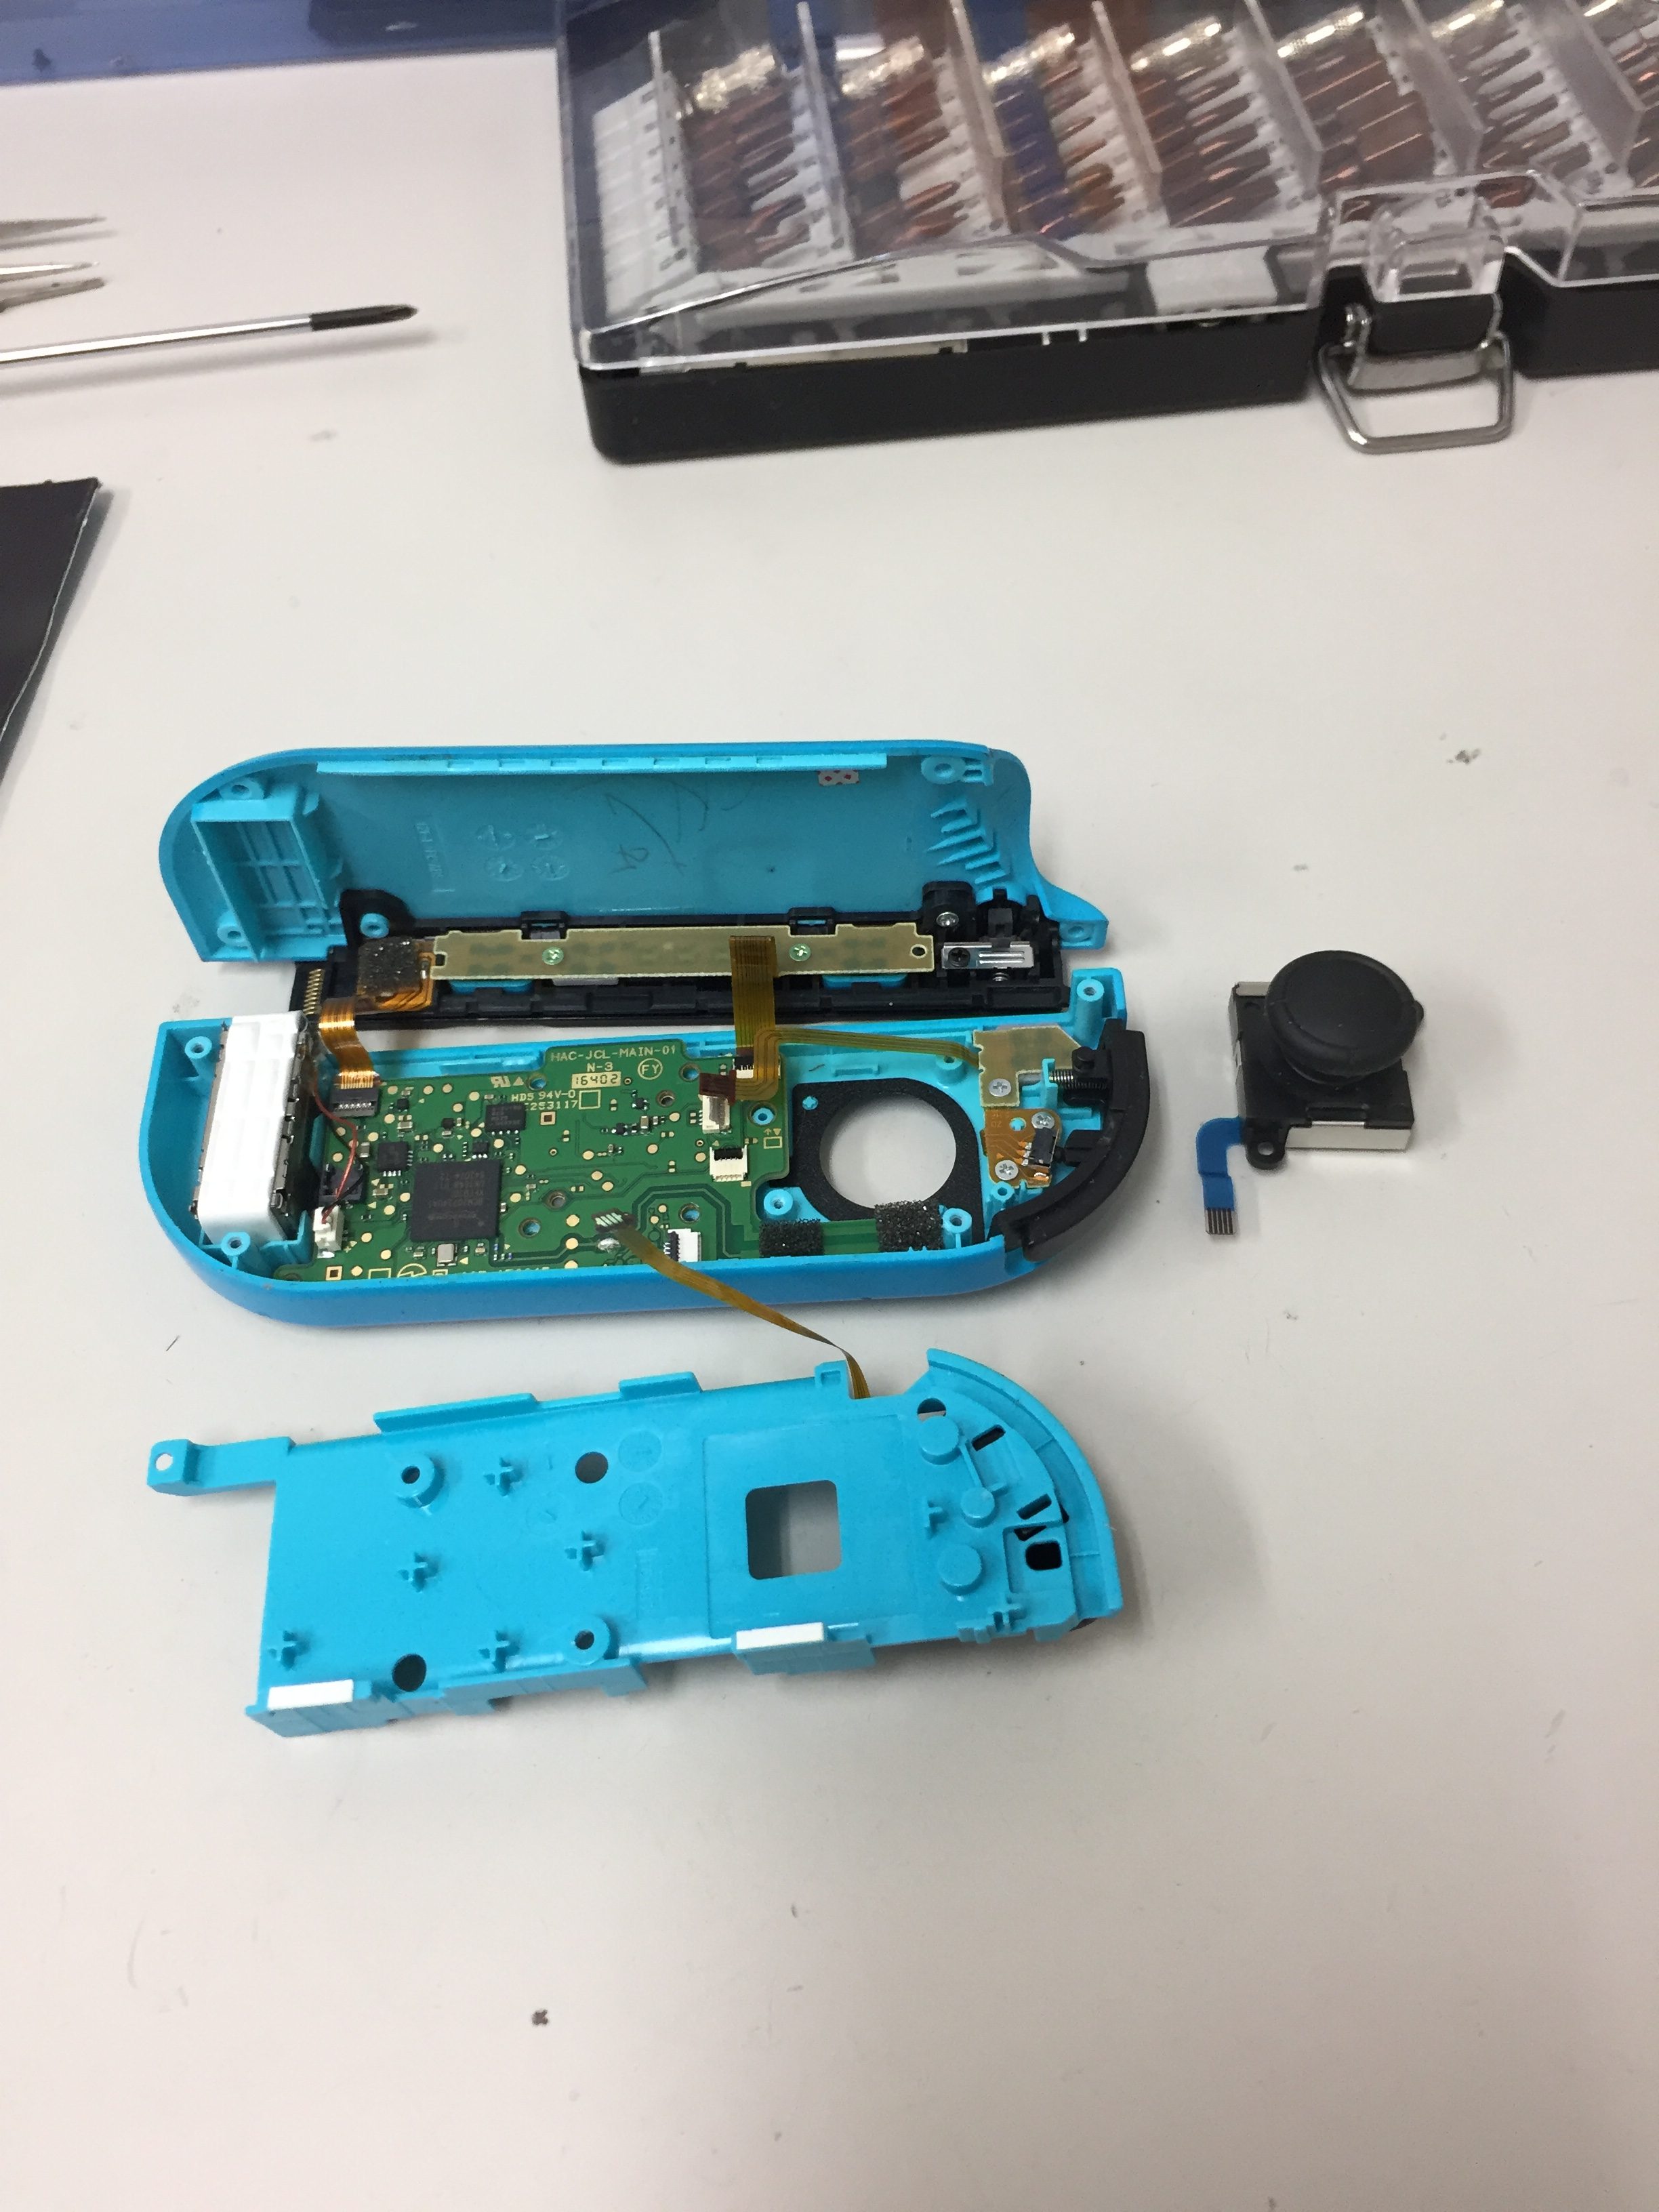 ジョイコンが赤青両方とも壊れて遊べなくなってしまった Nintendoswitchのジョイコン修理 Nintendo3ds Switch Psp 修理のゲームホスピタル Nintendo3ds ニンテンドーds Psp 修理